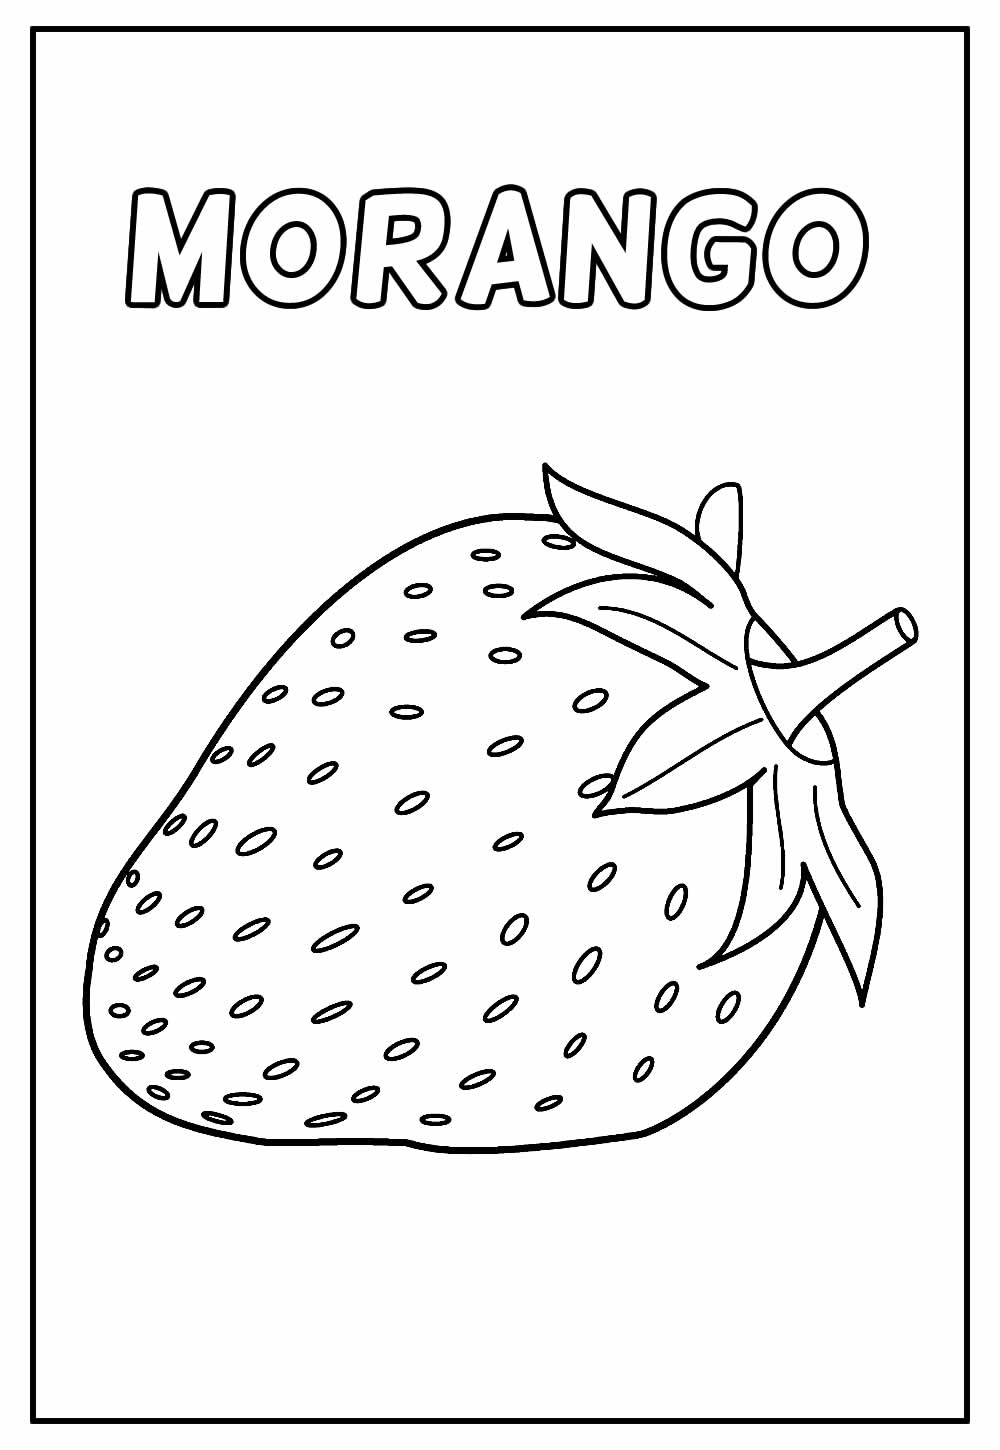 Desenho Educativo de Morango para colorir